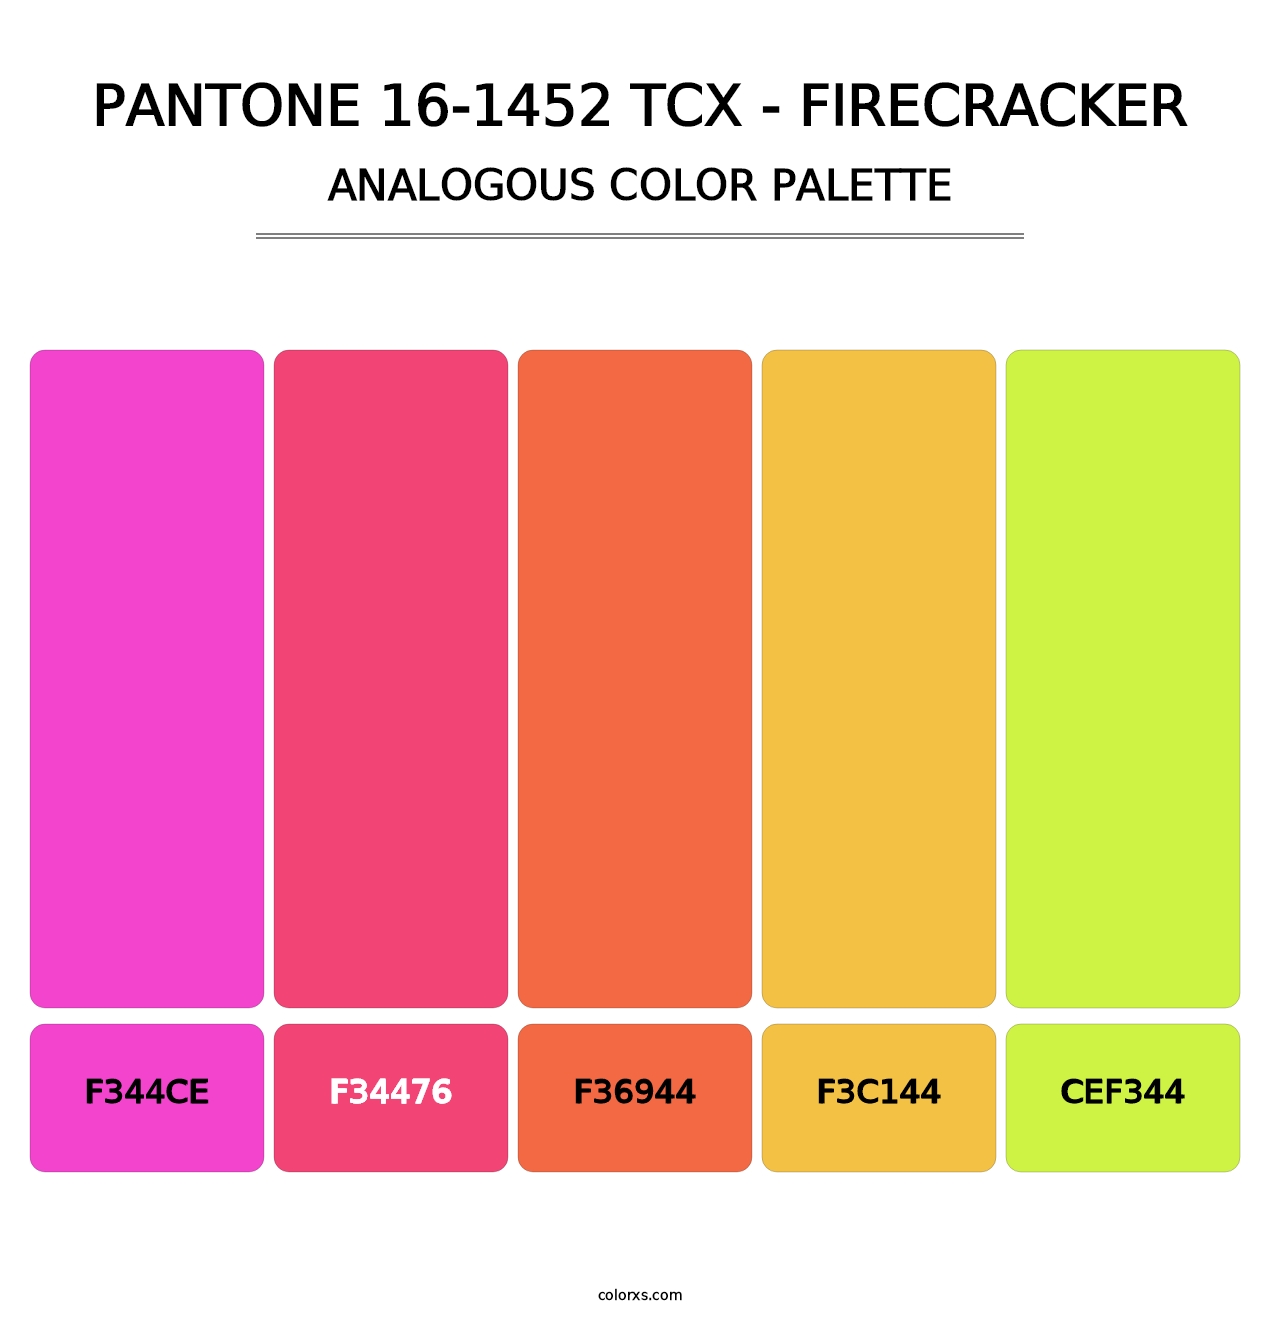 PANTONE 16-1452 TCX - Firecracker - Analogous Color Palette